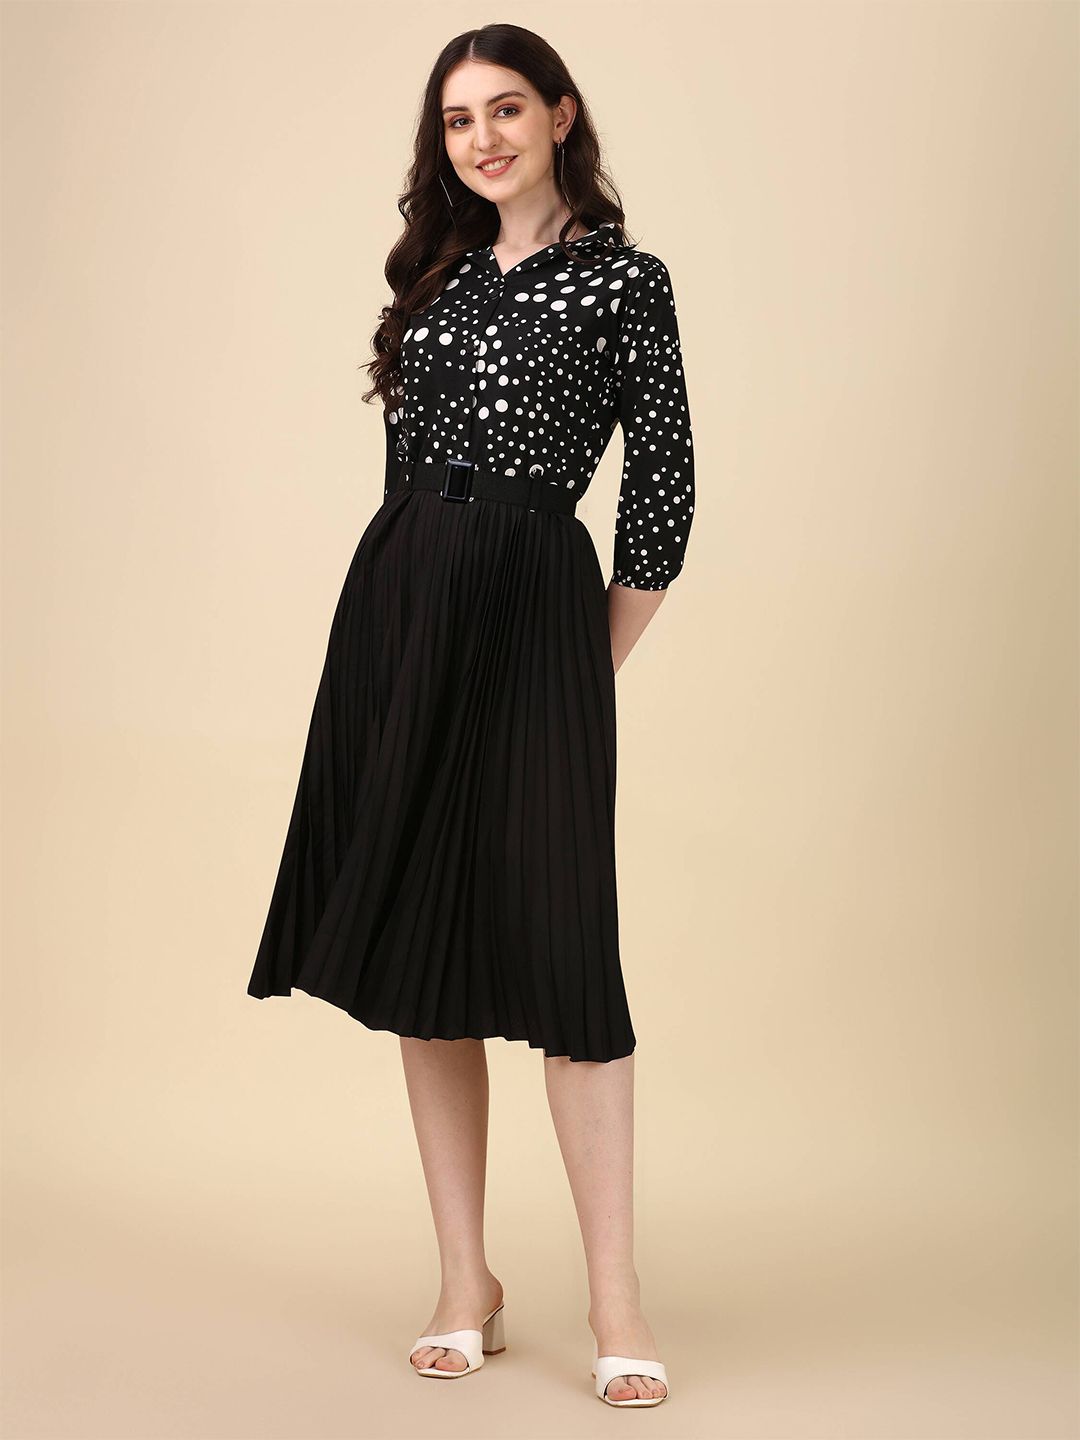 Paralians Black Polka Dot Crepe Fit & Flare Midi Dress Price in India